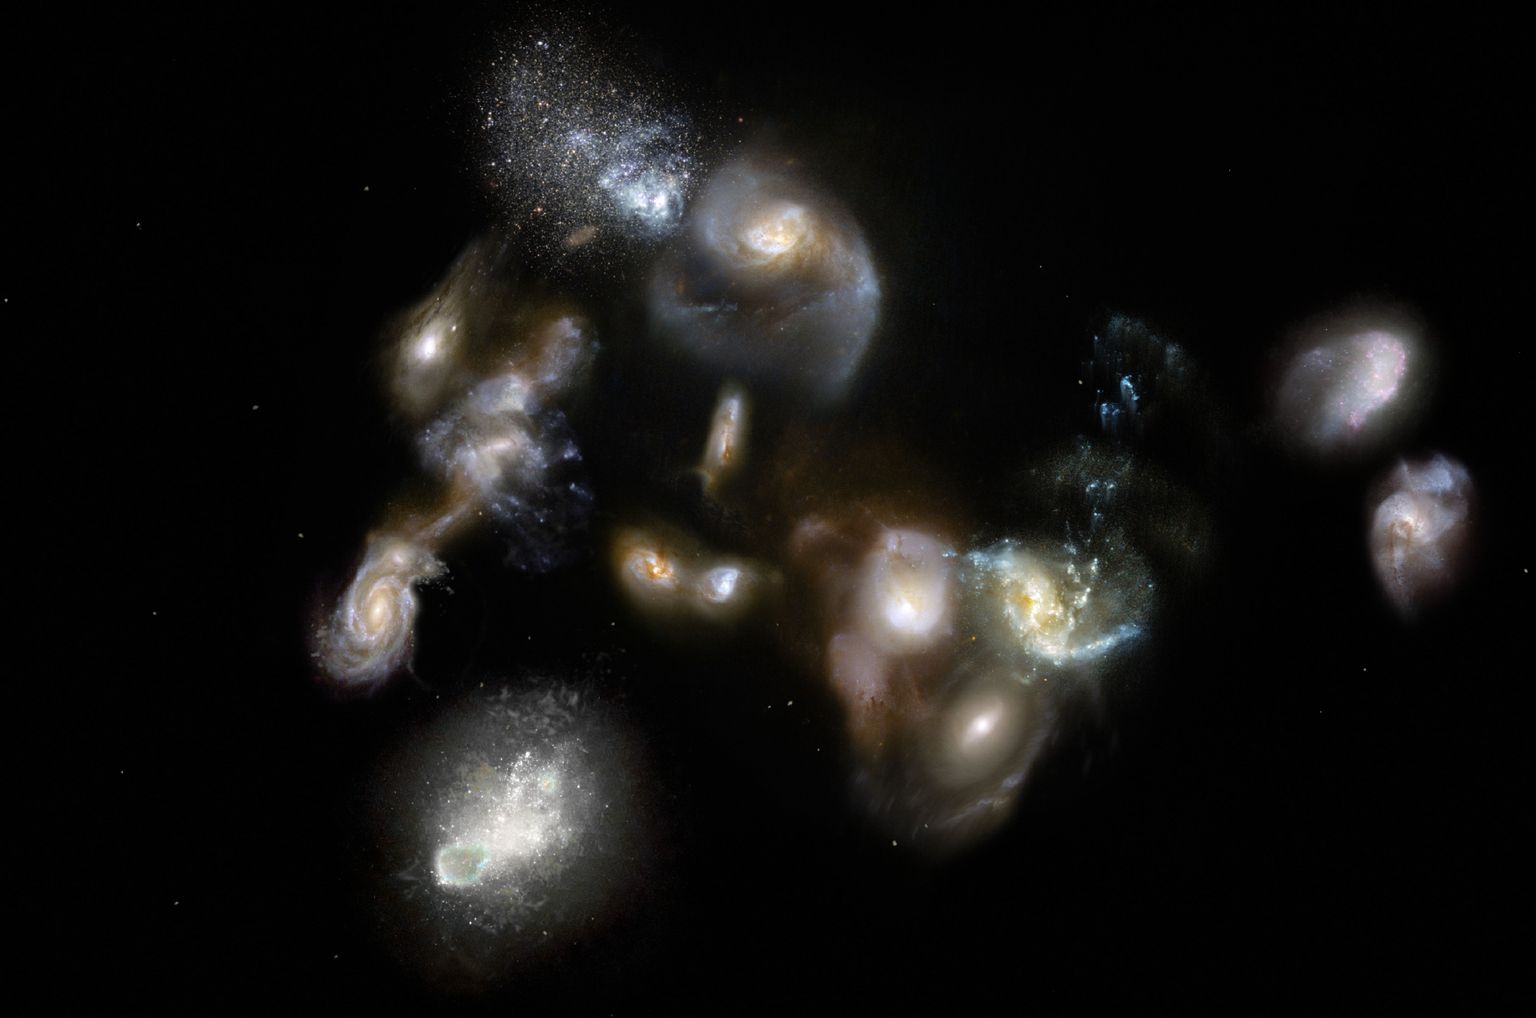 Kunstniku nägemus muistsest kaugest galaktikaparvest SPT2349-56. 14 galaktikat, mis siin koonduvad, võivad edasiste vaatluste põhjal lisa saada